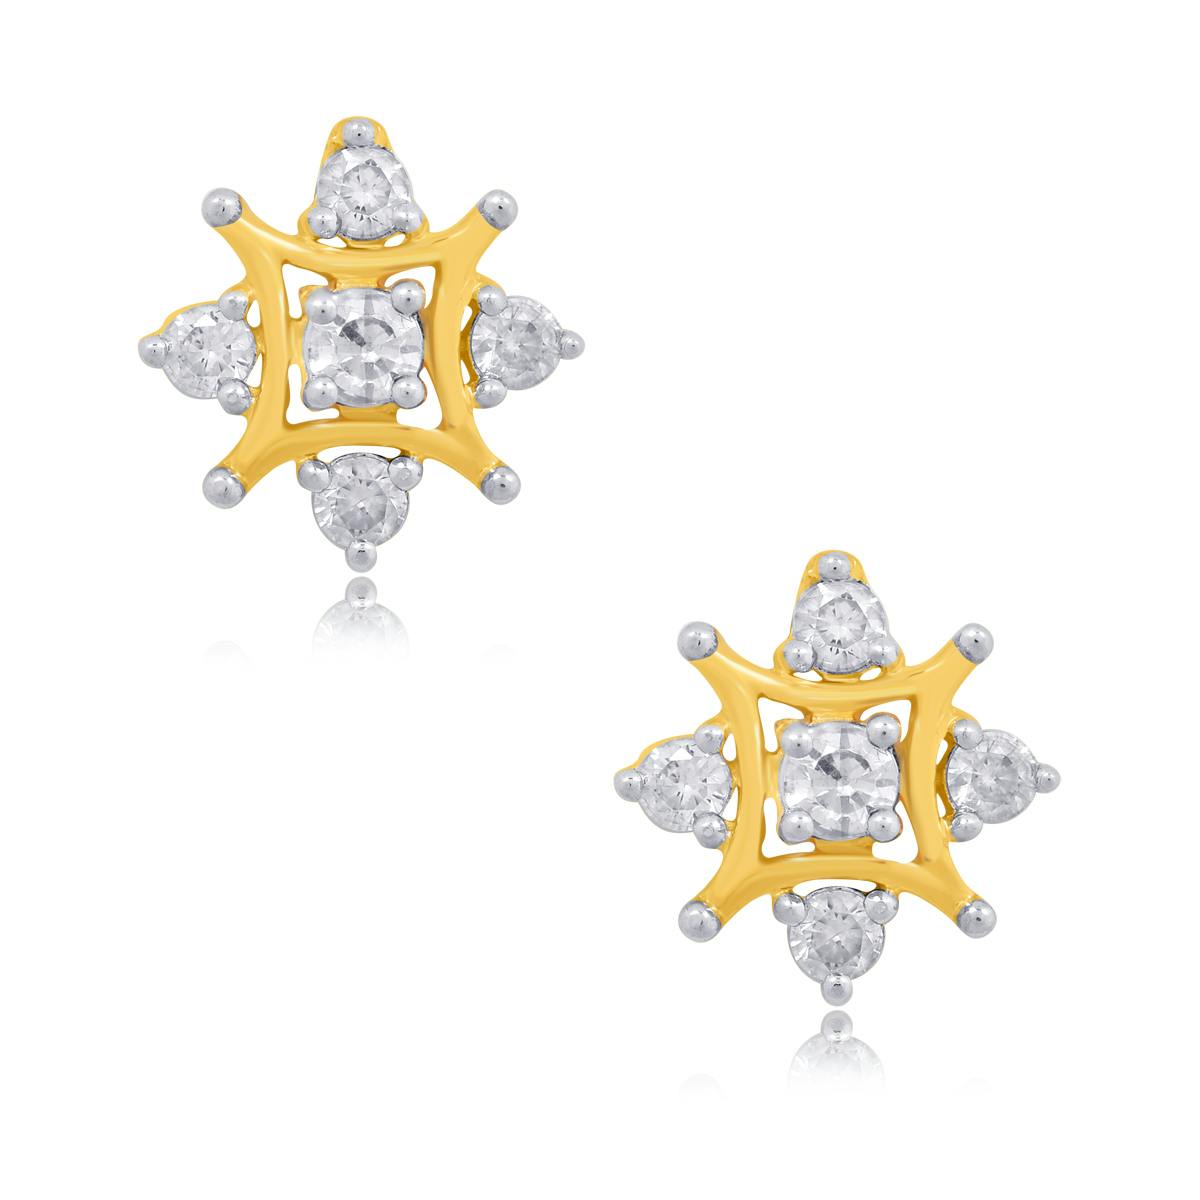 Taylor diamond earrings